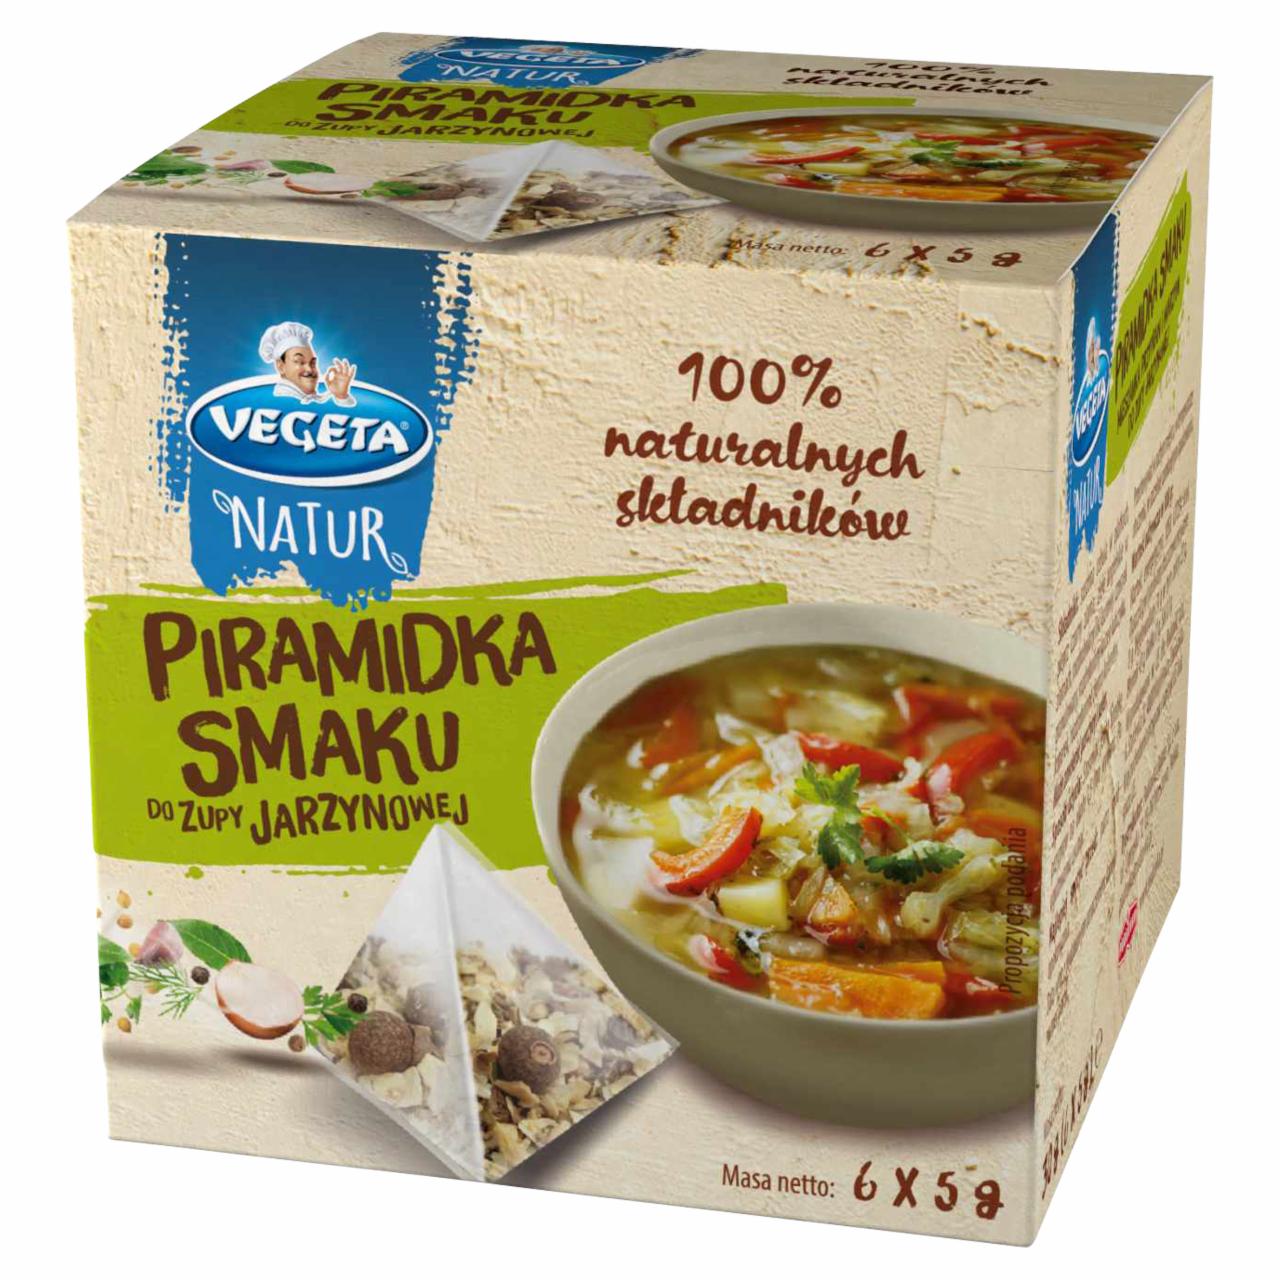 Zdjęcia - Vegeta Natur Piramidka smaku do zupy jarzynowej 30 g (6 x 5 g)